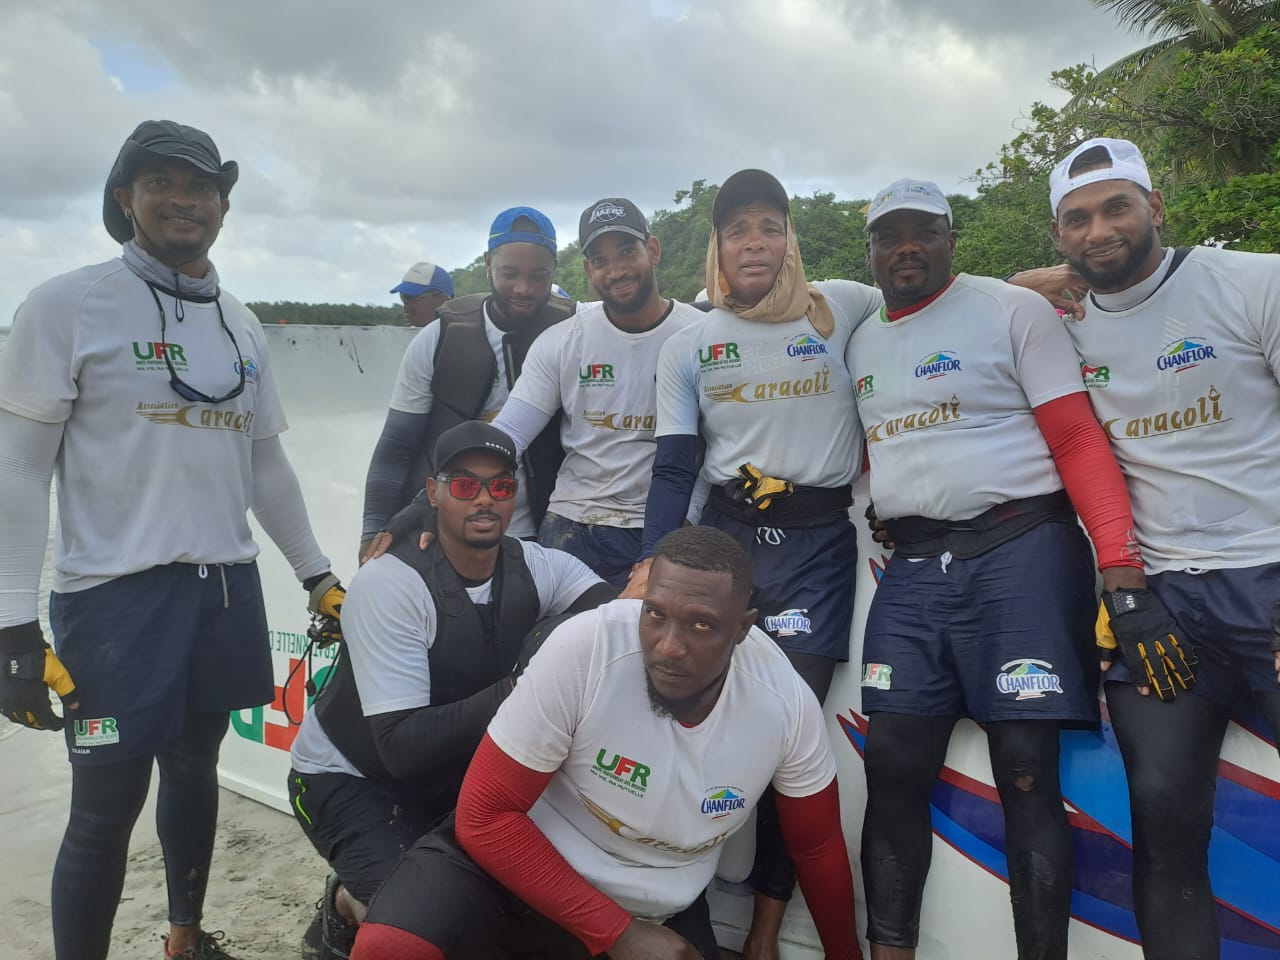     Yoles : UFR Chanflor remporte la coupe de Martinique à 15 jours du tour

